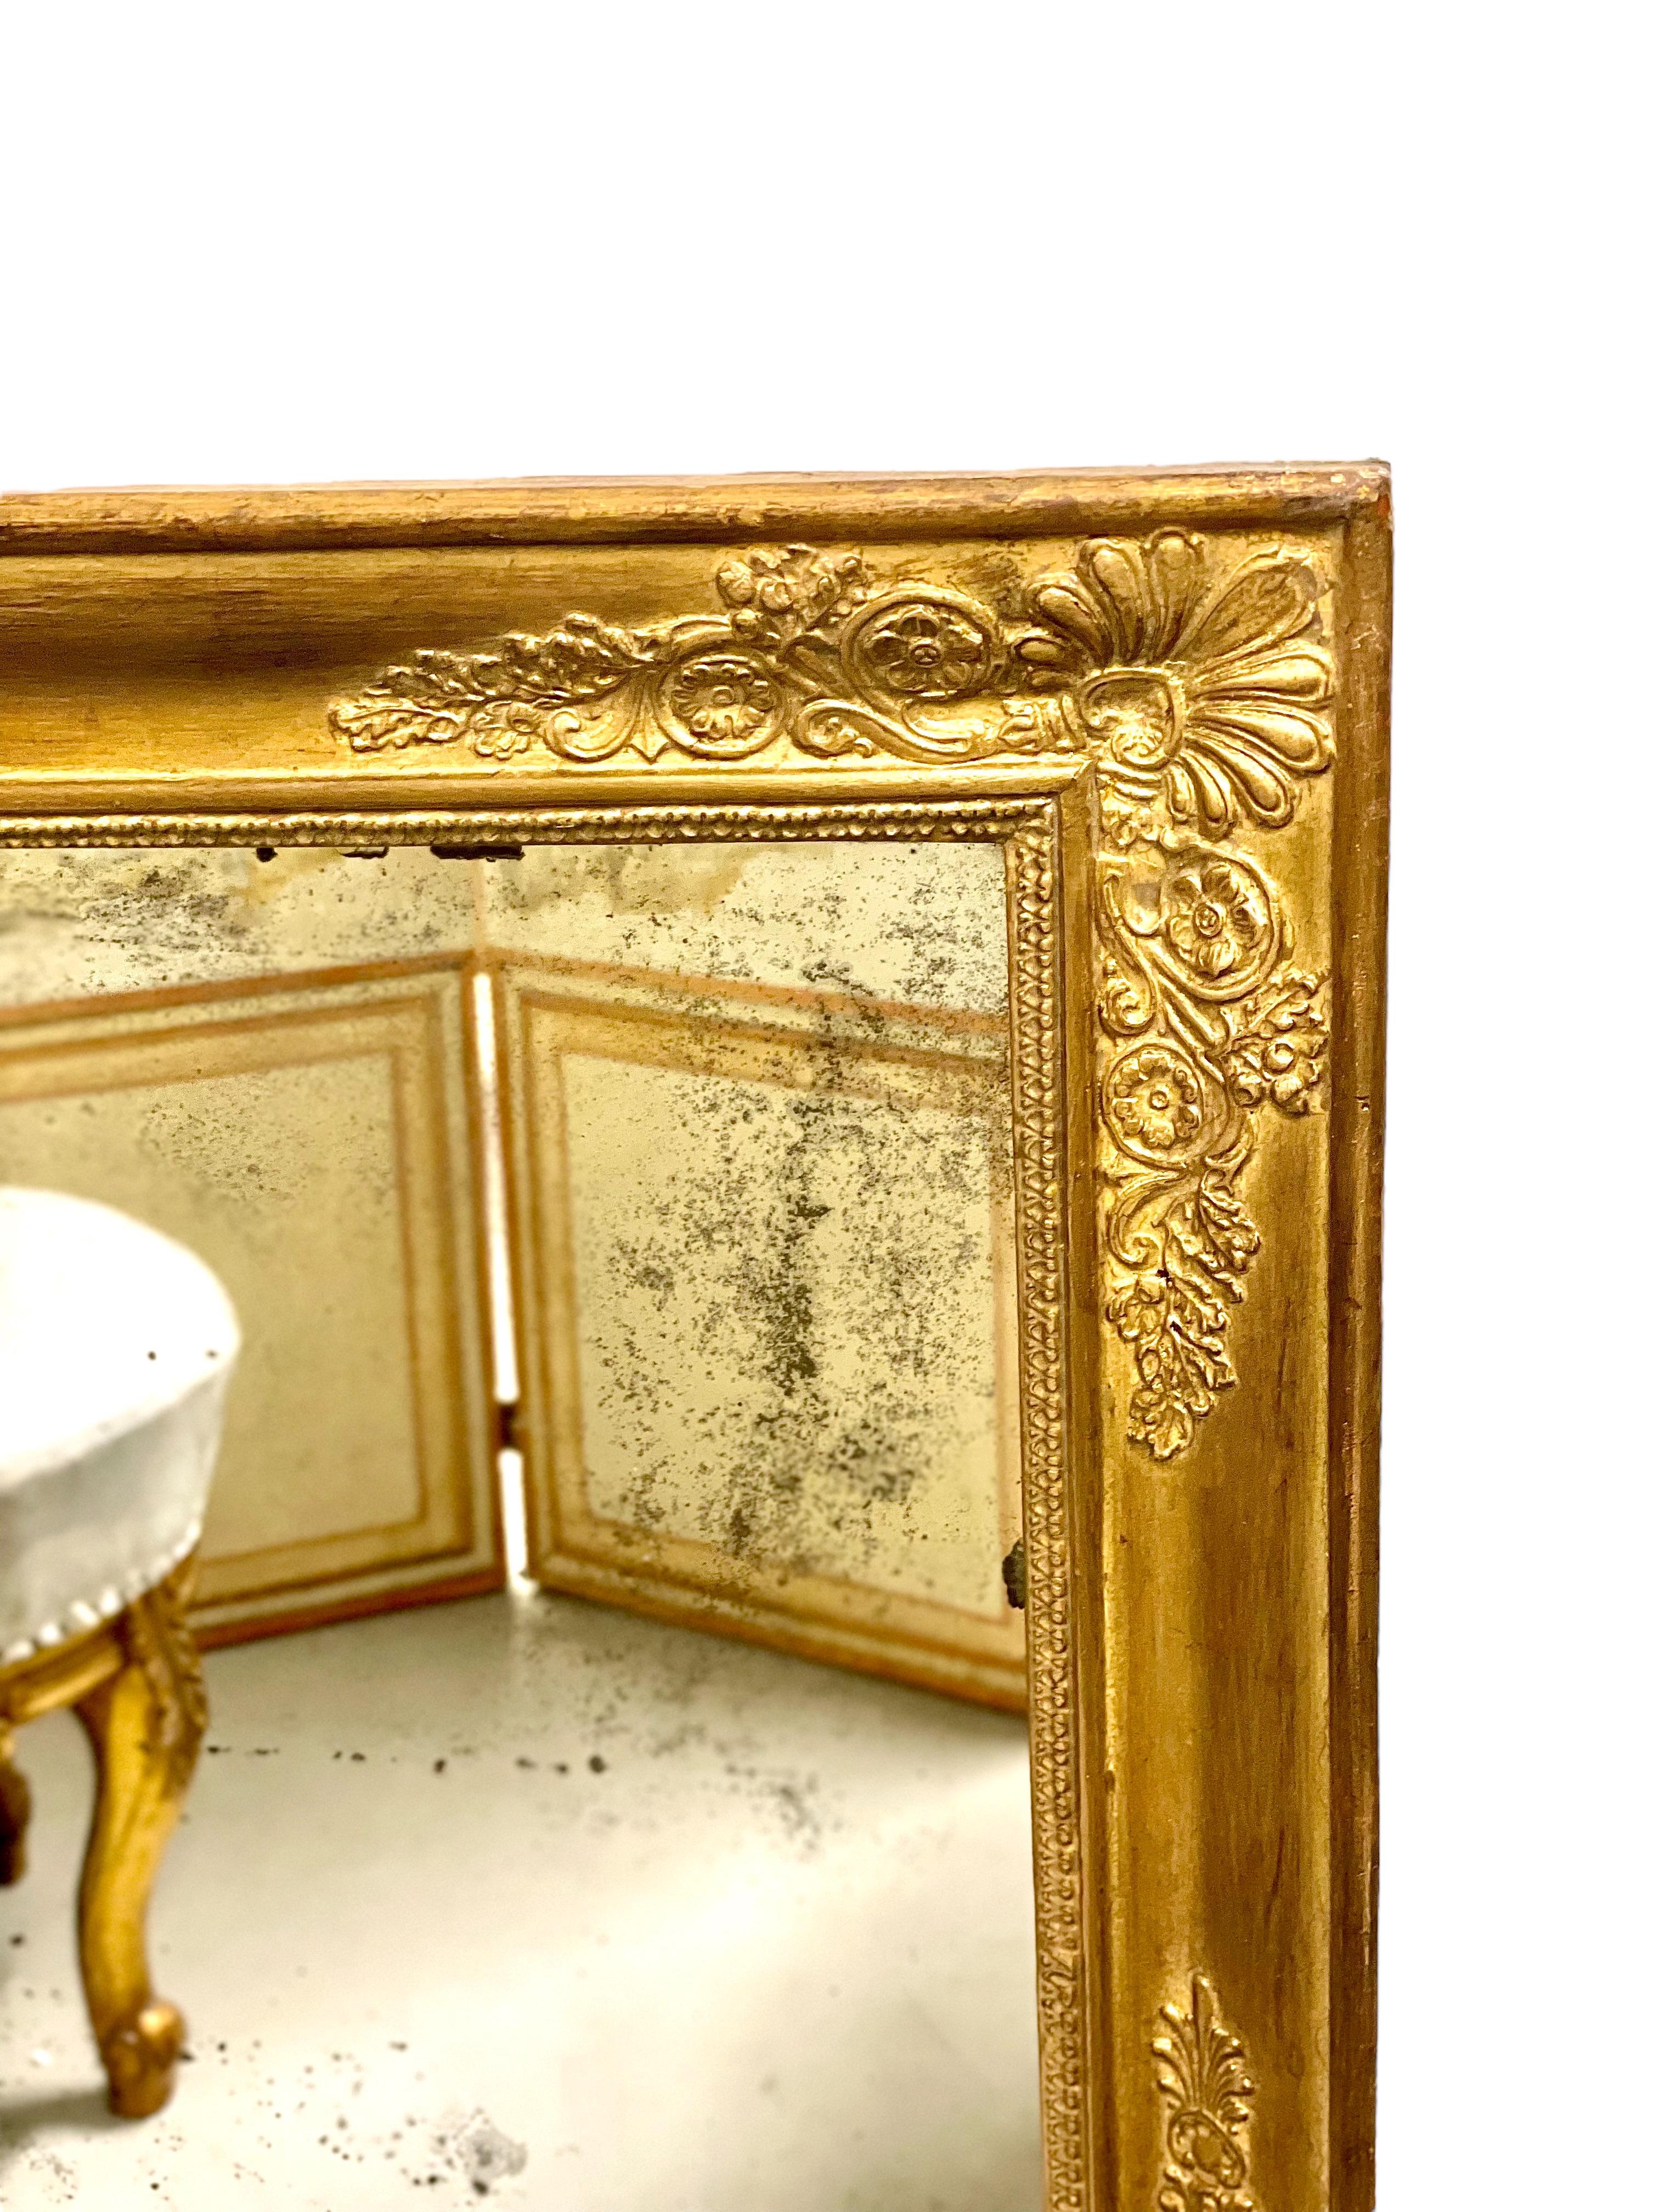 Magnifique miroir rectangulaire ancien d'époque Restauration française, dans un cadre en bois et stuc doré. Chaque angle est orné d'une palmette moulée et d'une fleur, tandis que les quatre côtés du cadre présentent une frise de feuilles d'eau,